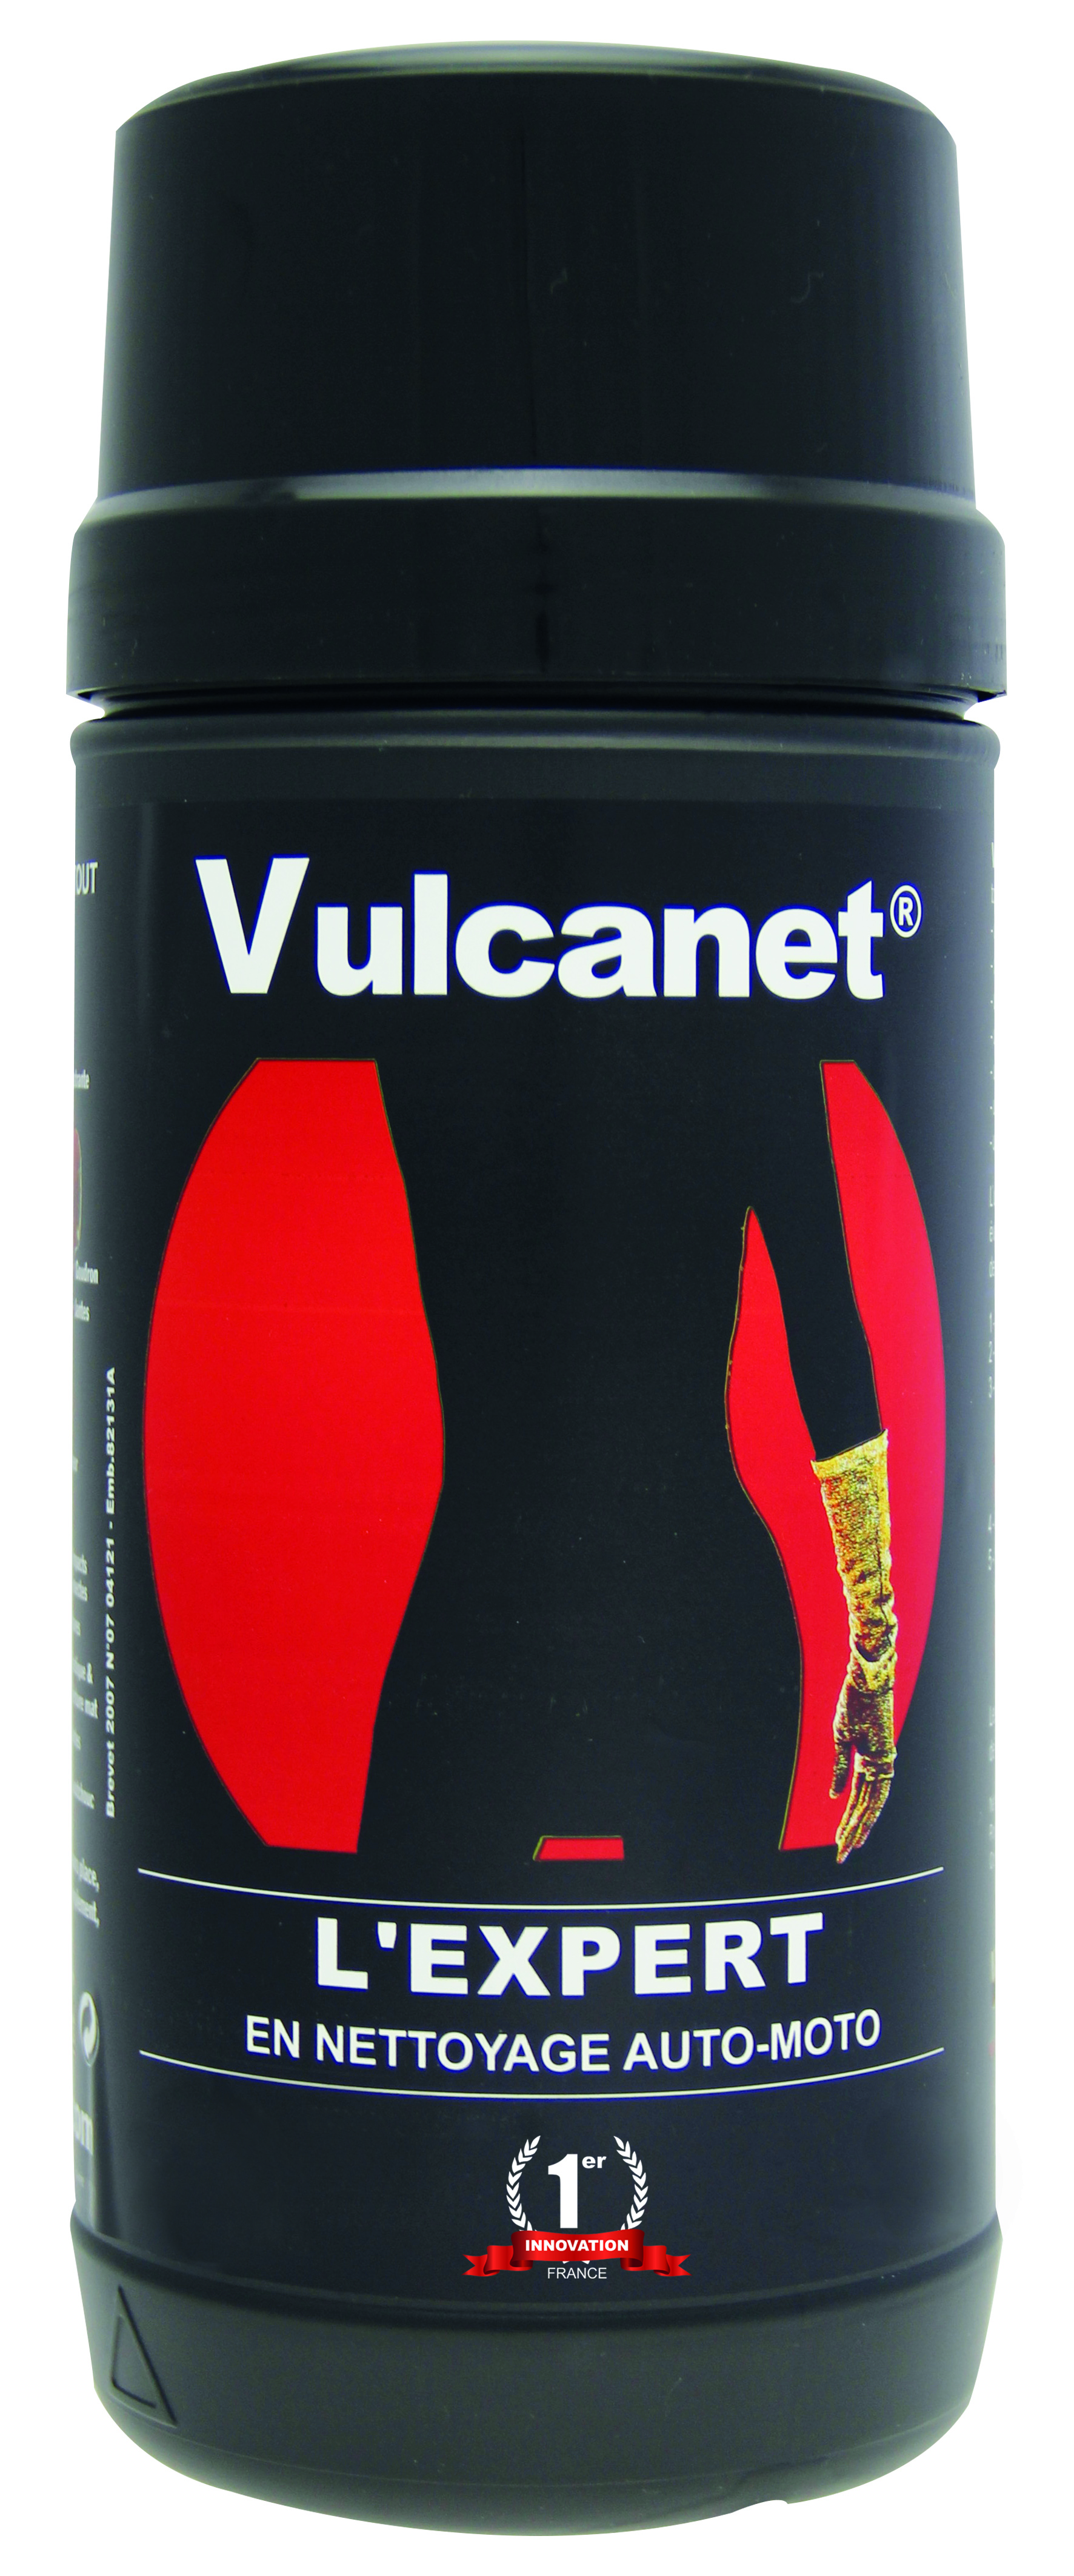 HD-boite-Vulcanet-FR